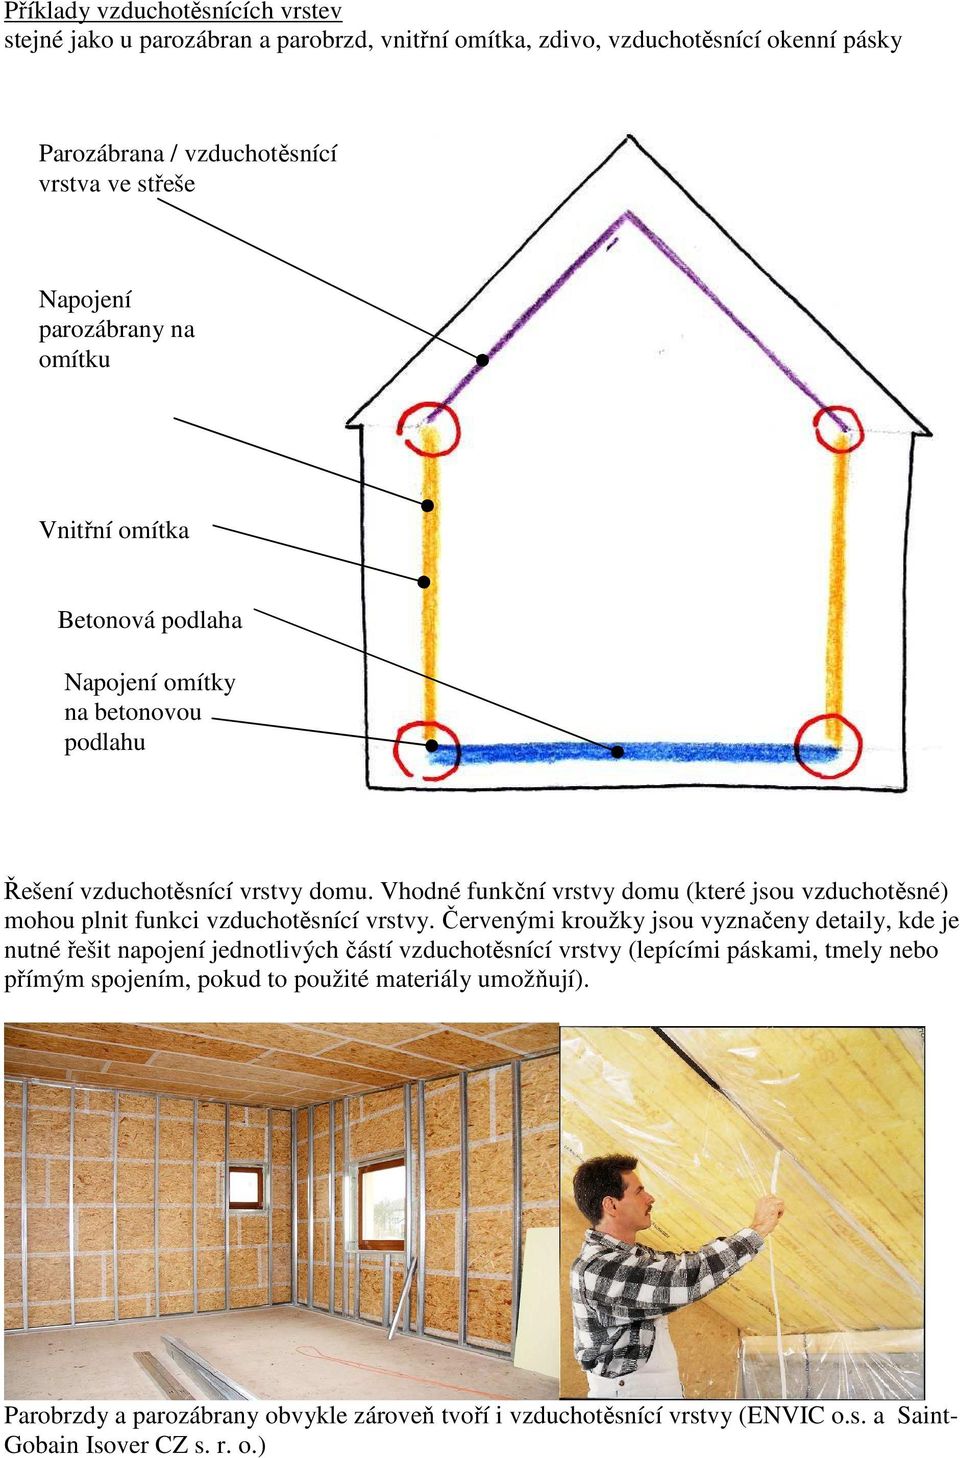 Vhodné funkční vrstvy domu (které jsou vzduchotěsné) mohou plnit funkci vzduchotěsnící vrstvy.